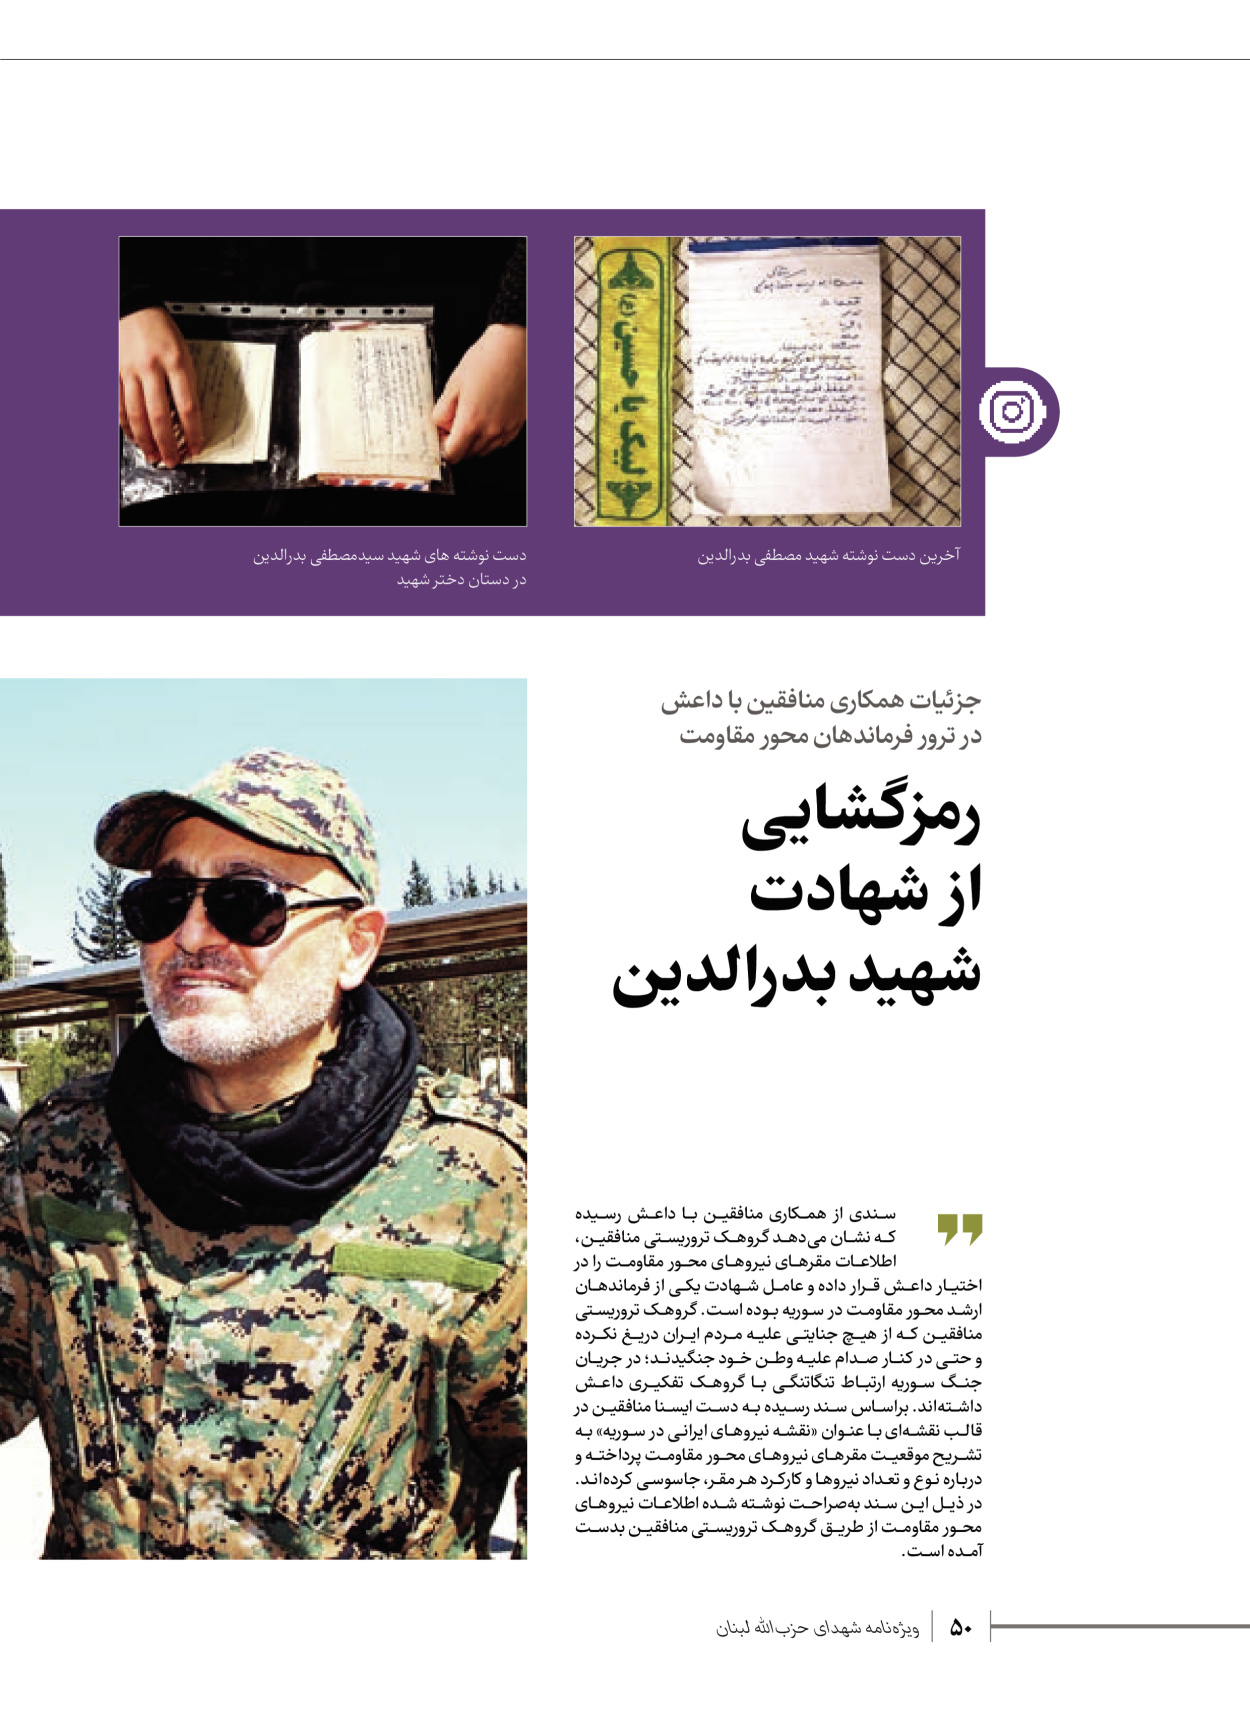 روزنامه ایران - ویژه نامه شهدای قدس ۶ - ۲۵ فروردین ۱۴۰۳ - صفحه ۵۰